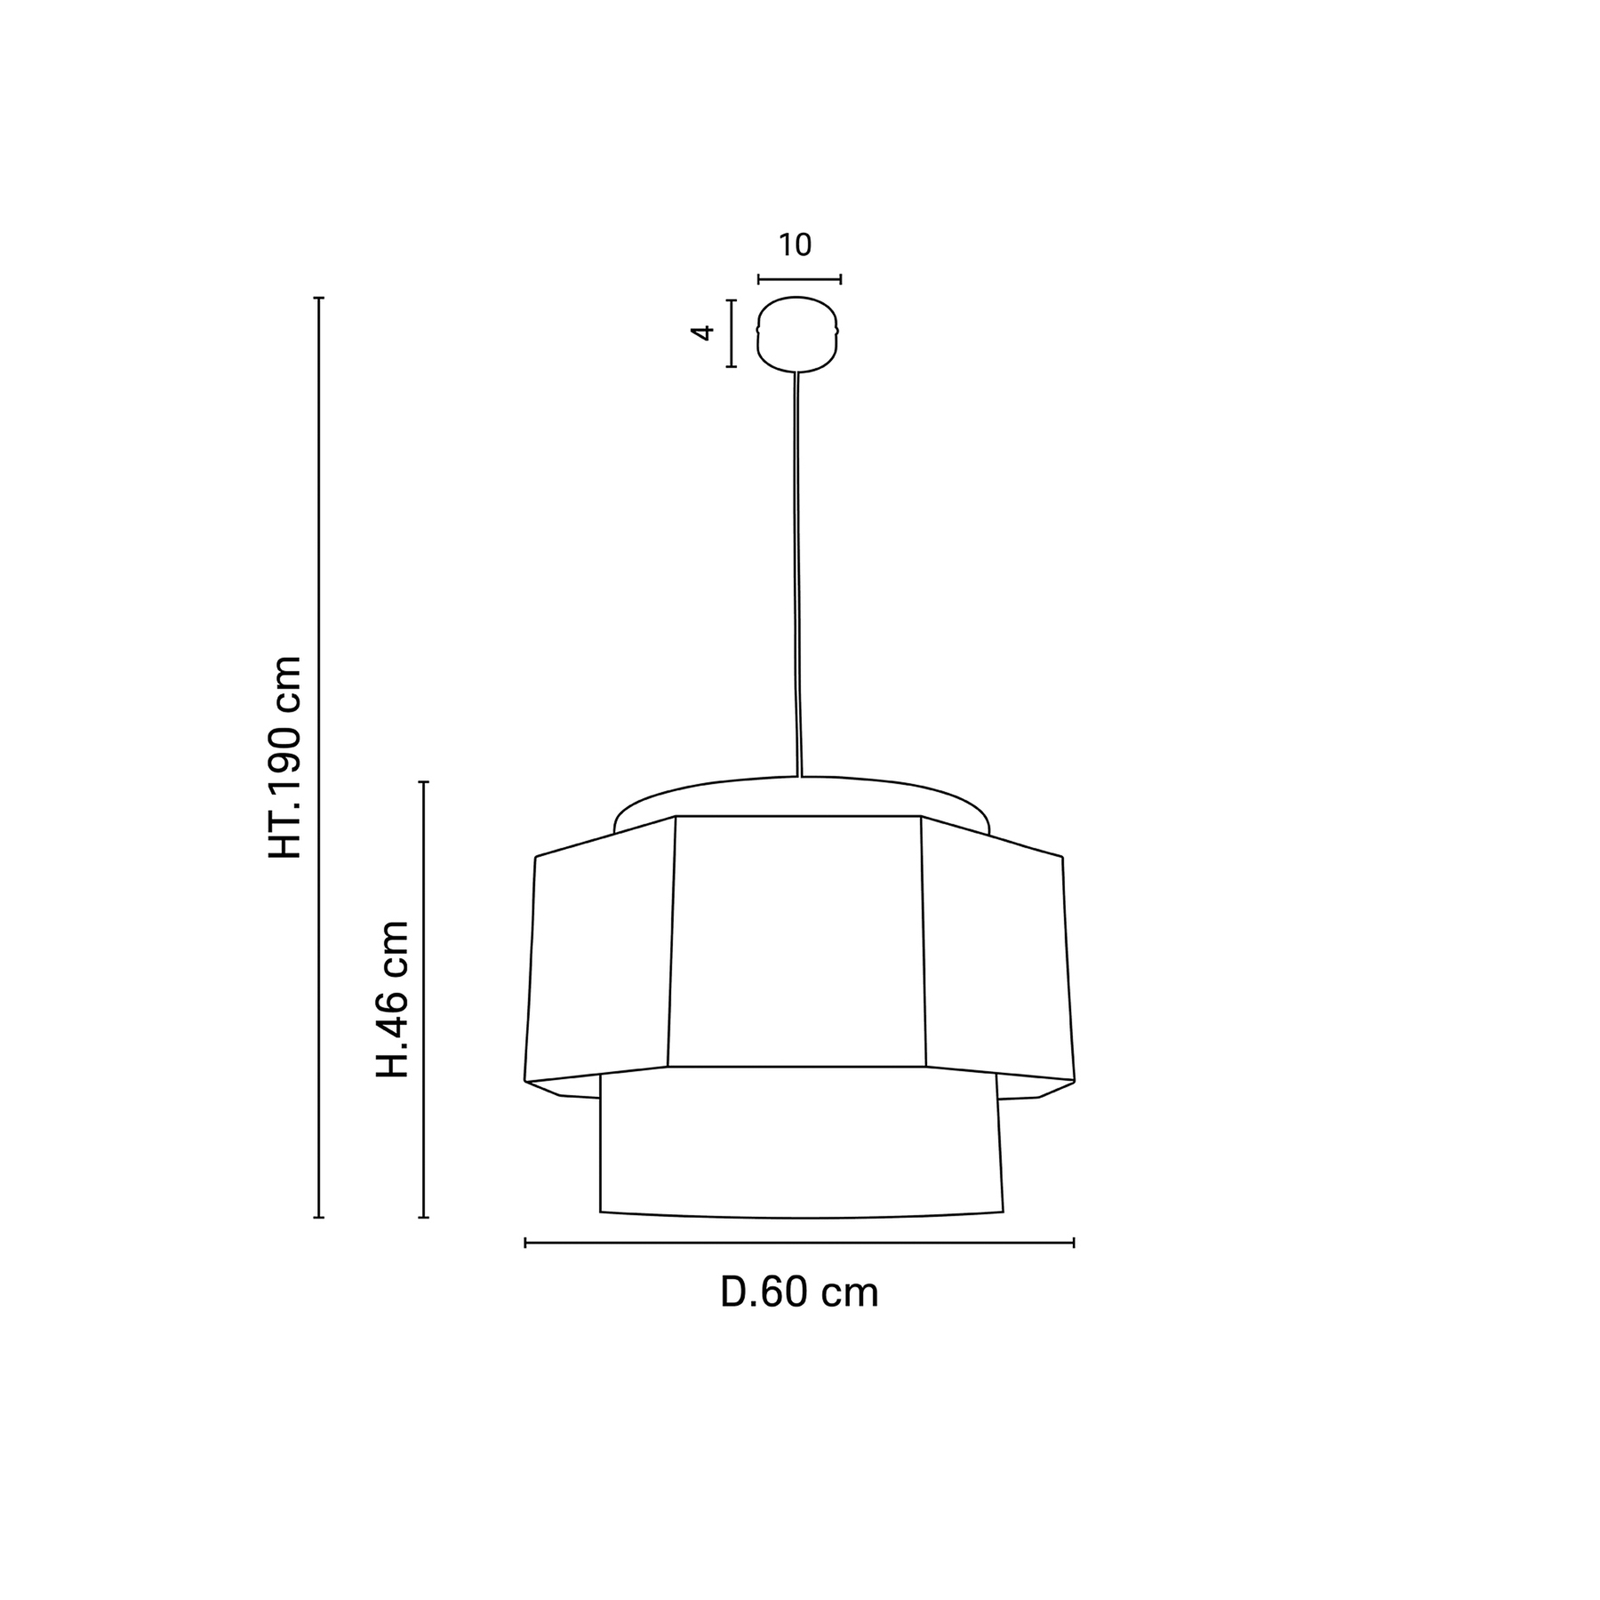 MARKET SET Marrakech hanglamp, 60x46cm, curry